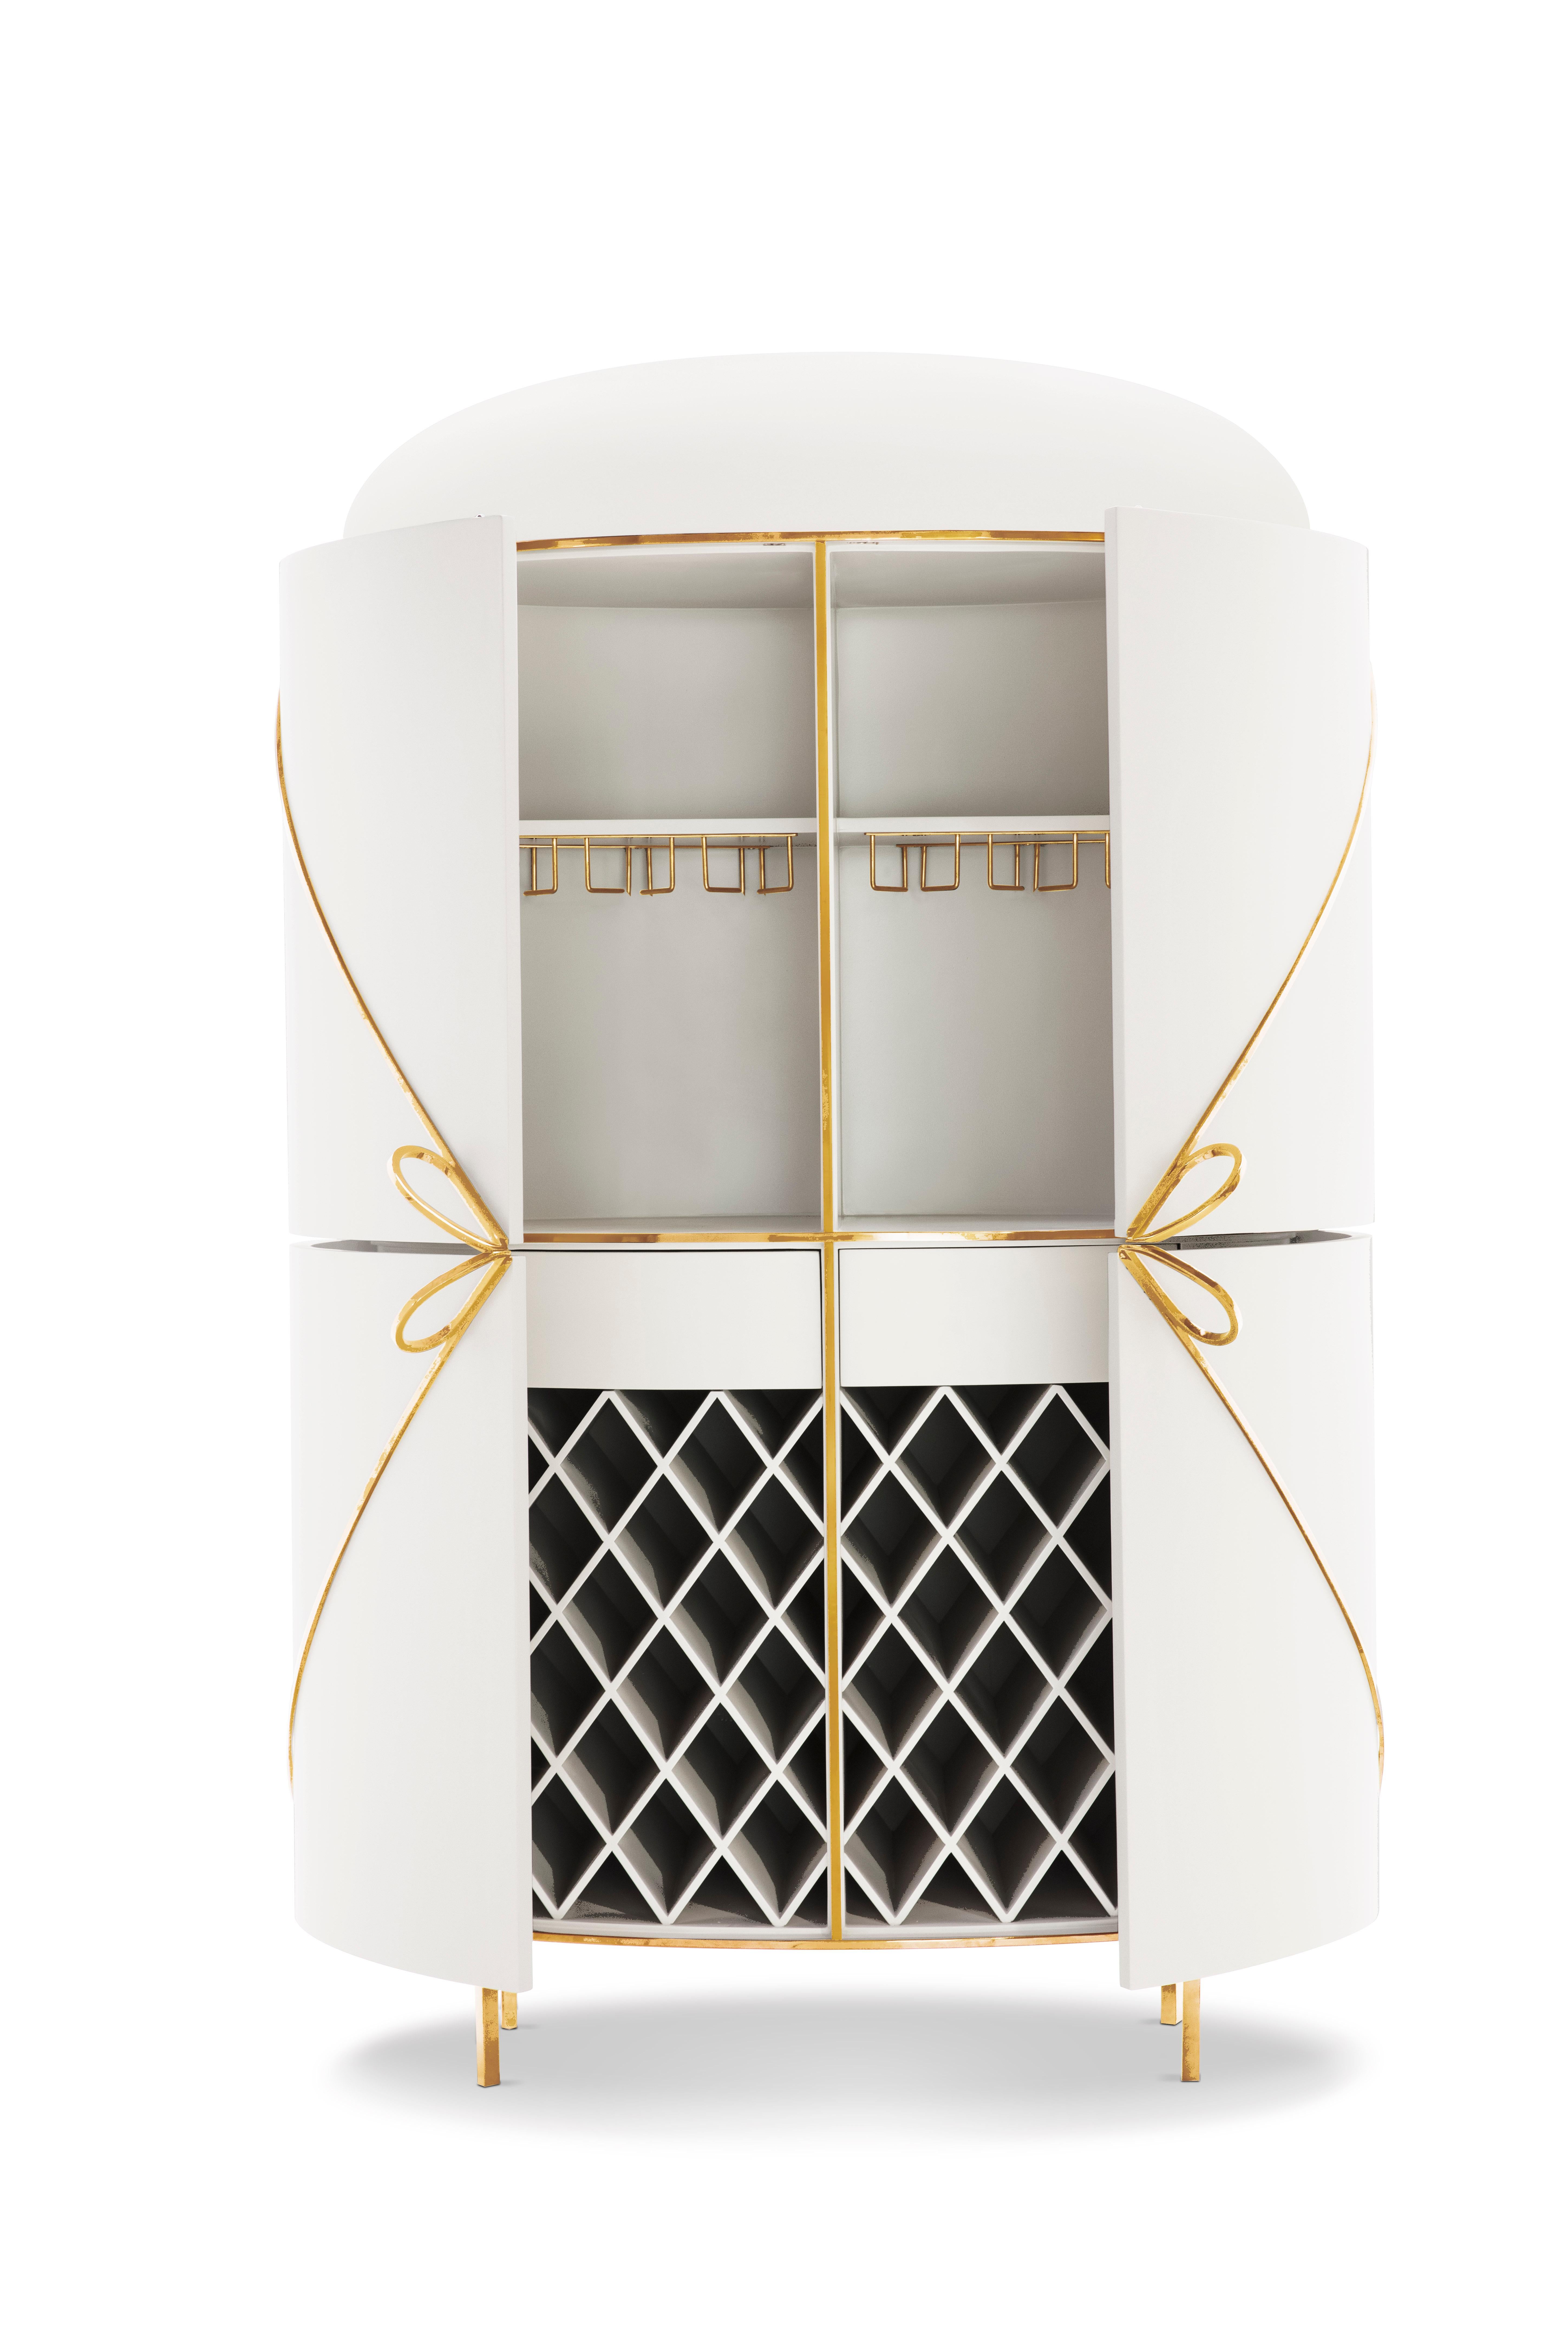 88 Secrets White Bar Cabinet with Gold Trims von Nika Zupanc ist ein makelloser, weißer Barschrank mit sinnlichen, femininen Linien und luxuriösen Metallverzierungen in Gold. Ein Blickfang in jedem Innenraum!

Nika Zupanc, eine auffallend